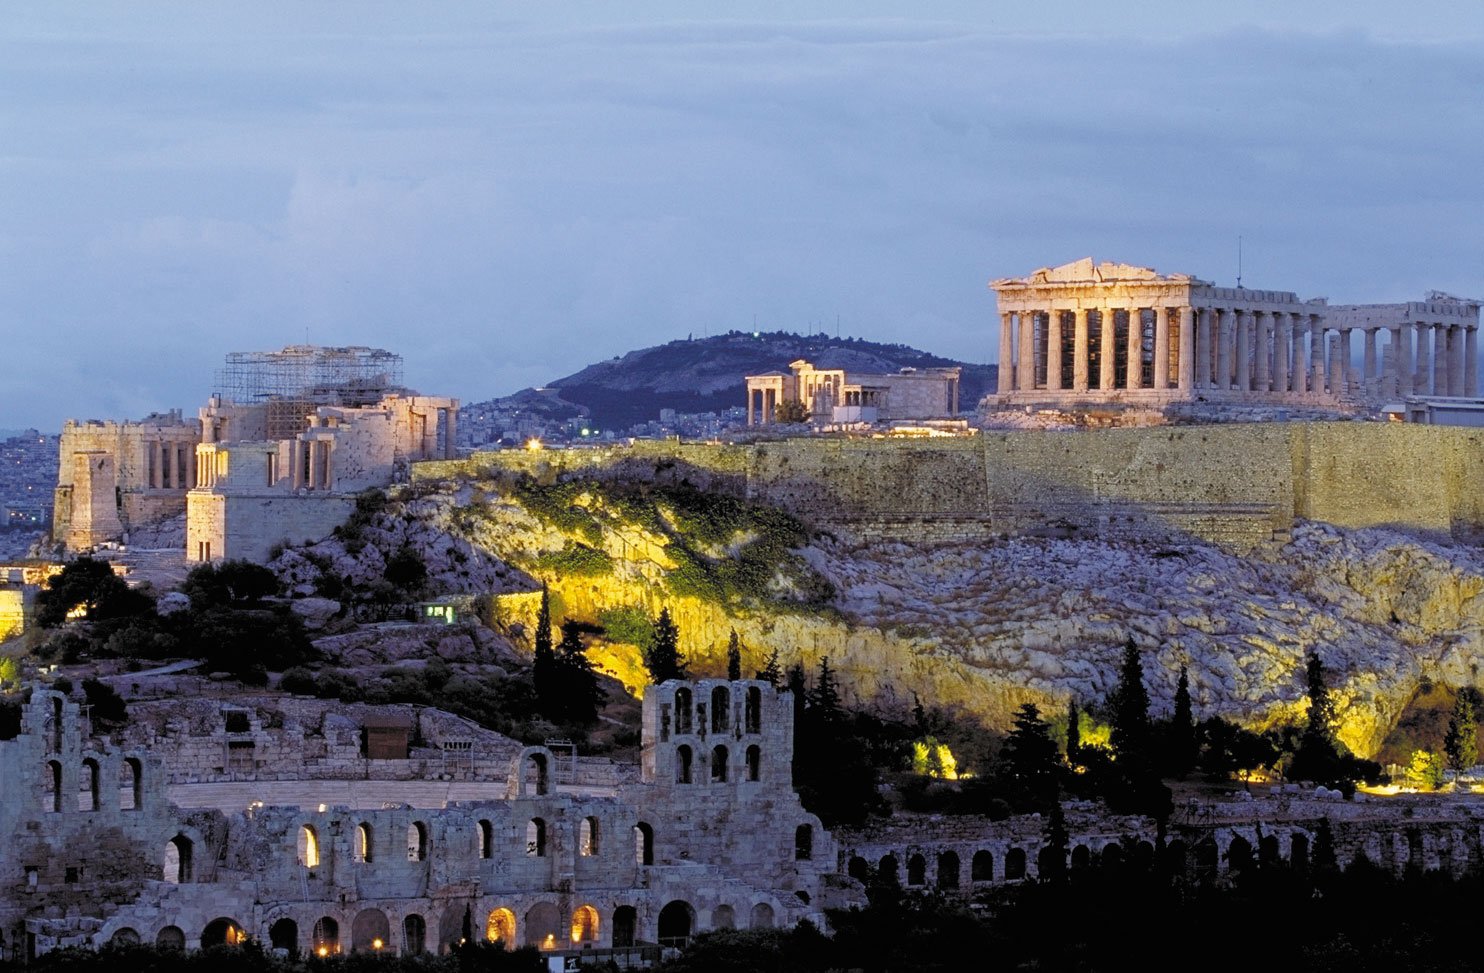 Acropolis - thời vàng son của nền văn minh Hy Lạp cổ đại